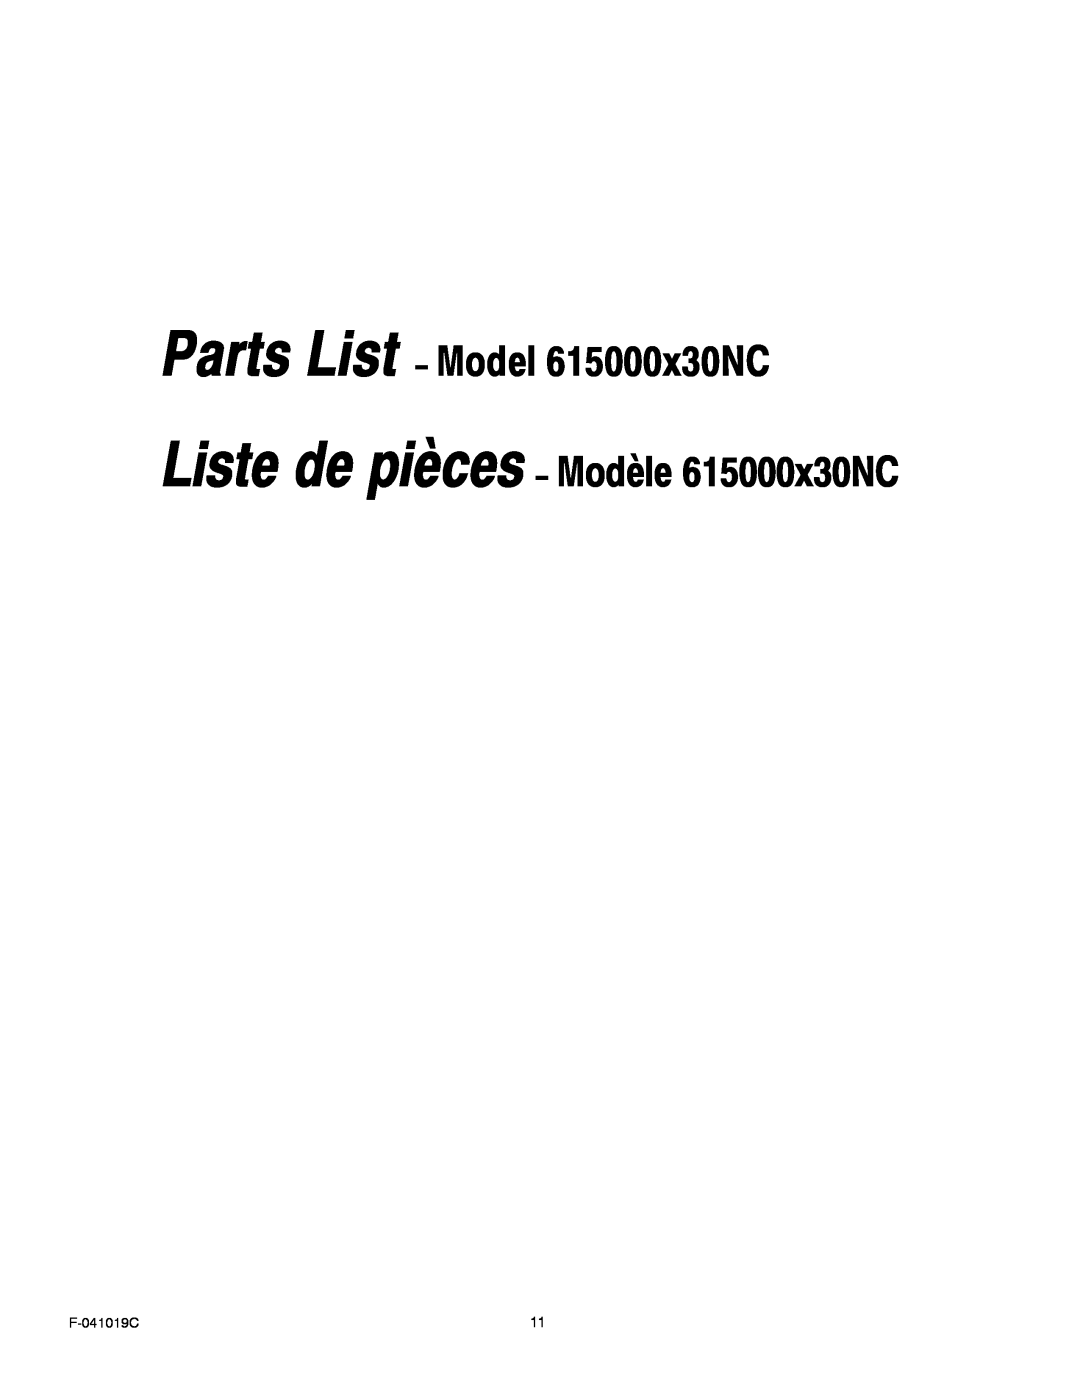 Murray owner manual Parts List − Model 615000x30NC, Liste de pièces − Modèle 615000x30NC, F-041019C 